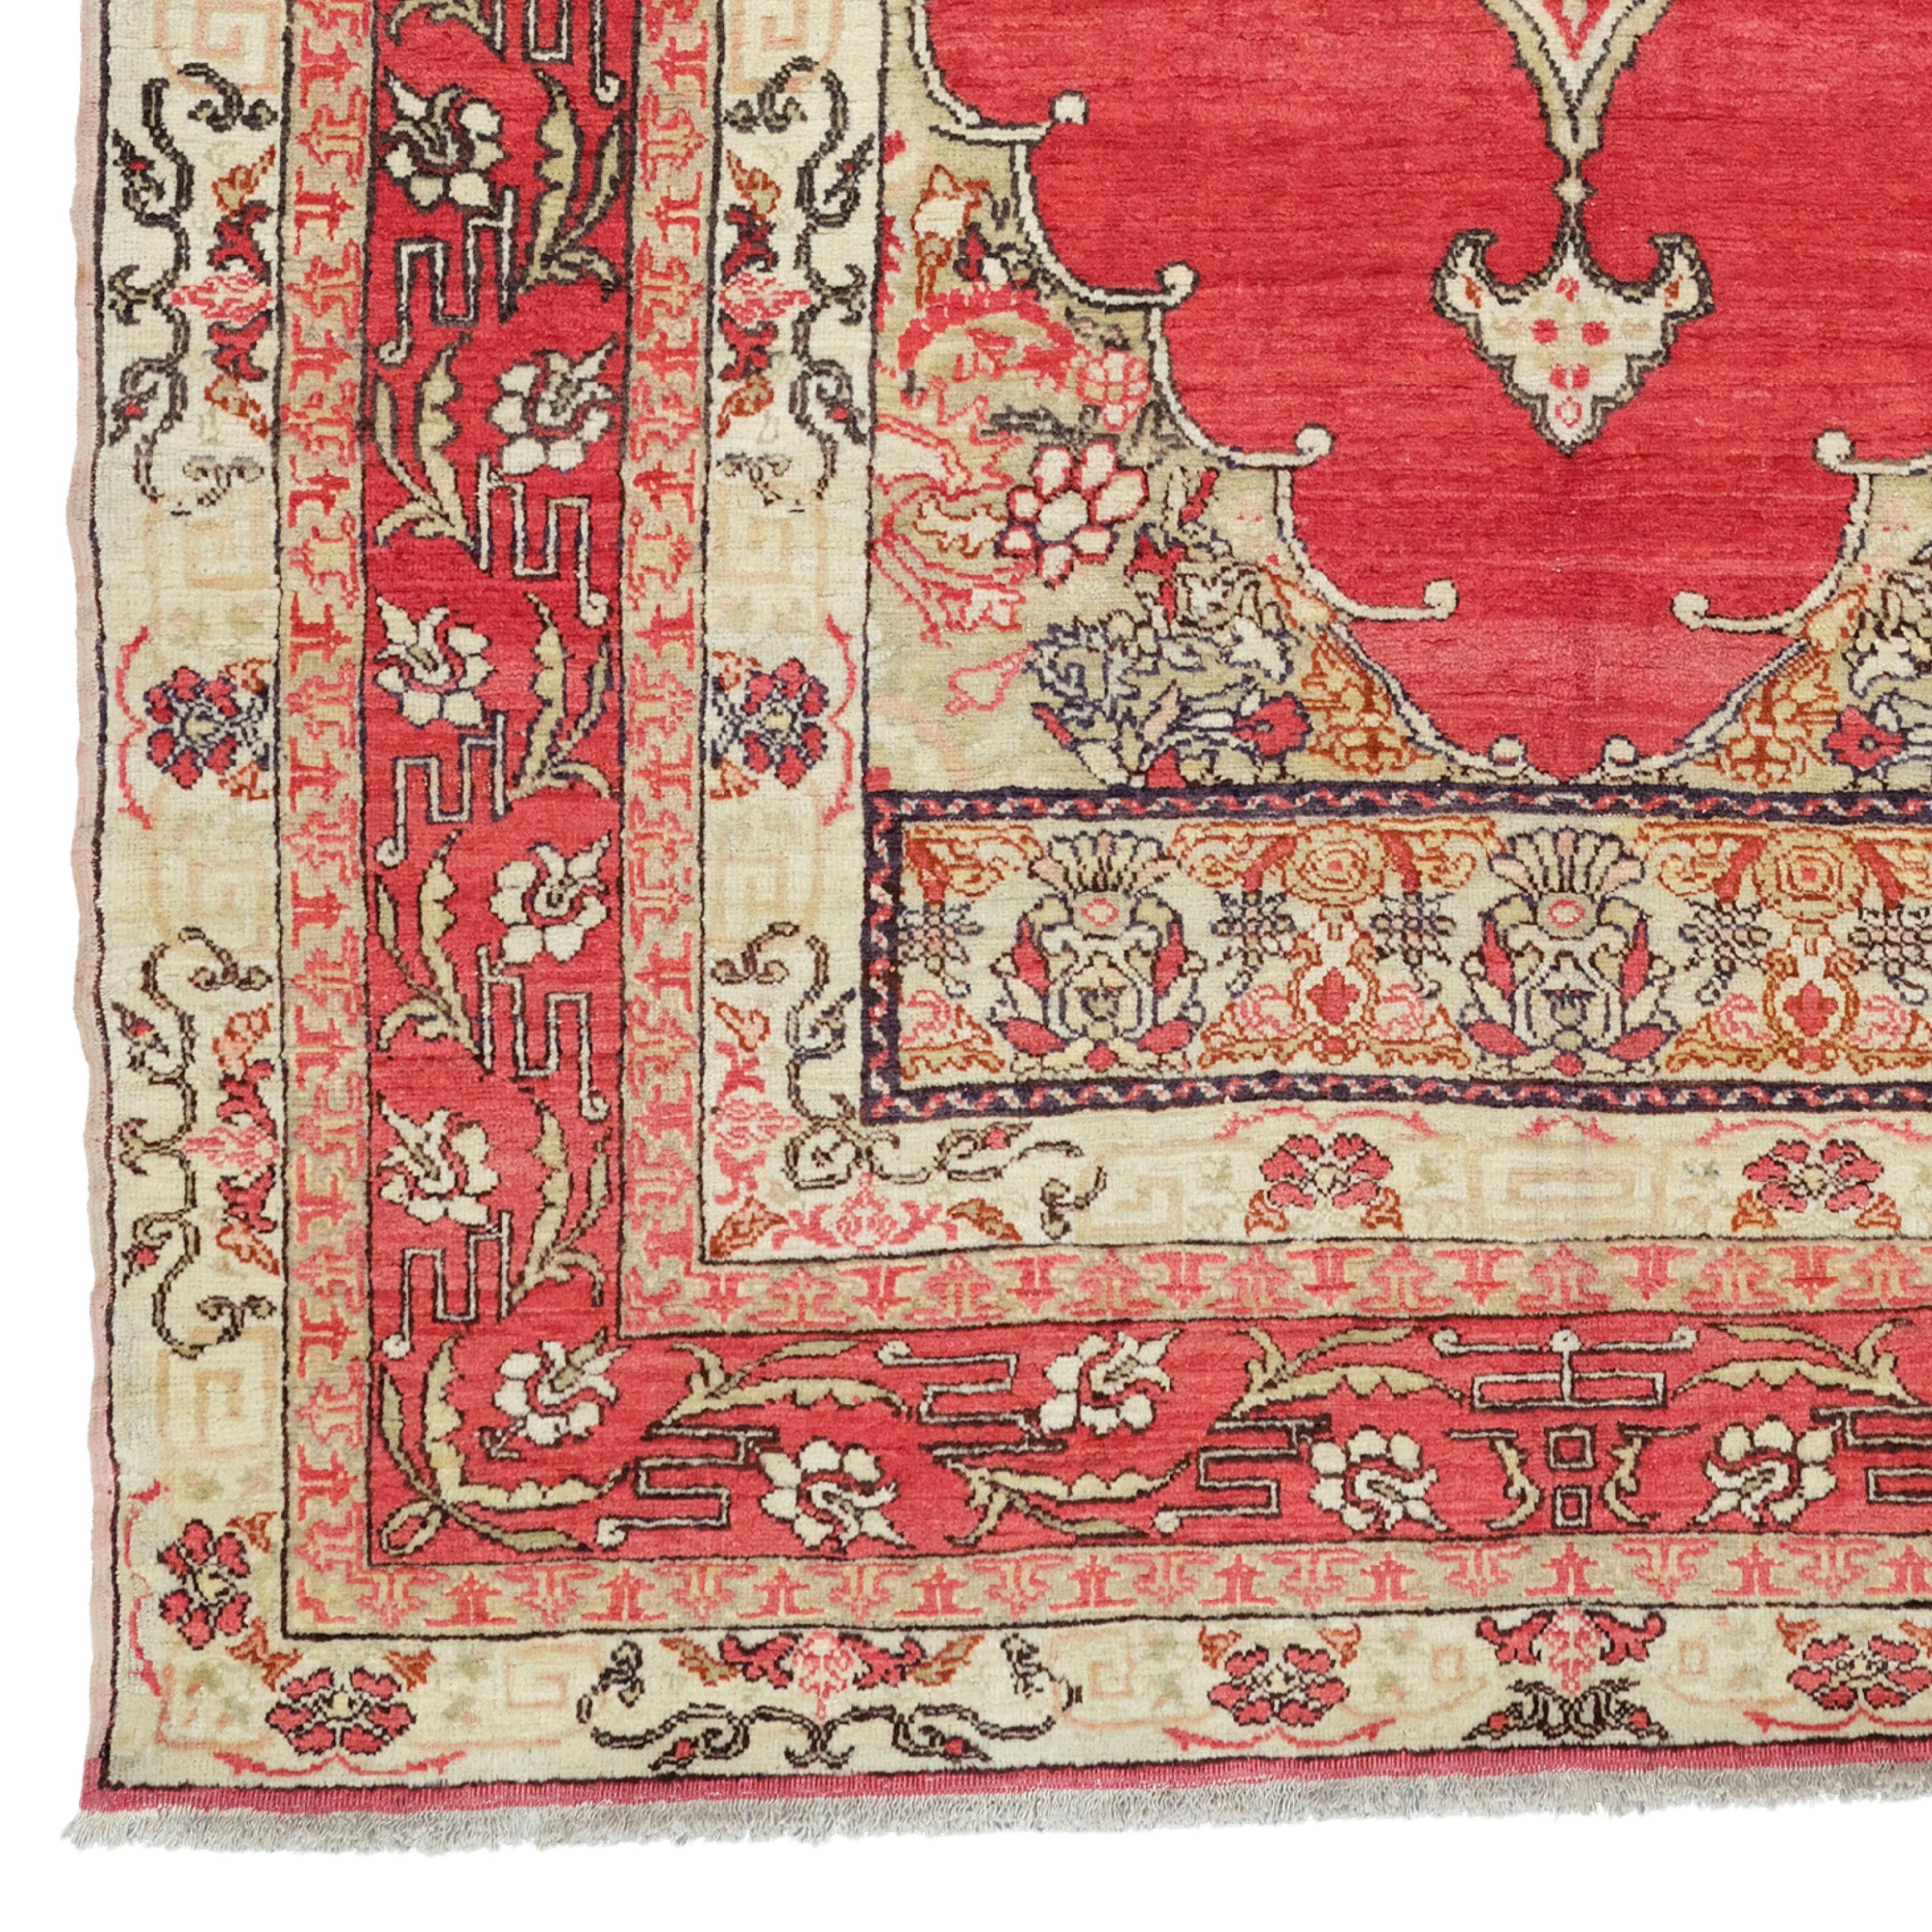 Ancien tapis turc Fertek
Tapis Fertek du 19e siècle  Taille : 130x212 cm

Il s'agit d'un type de tapis connu sous le nom de tapis turc Fertek au 19e siècle.

Couleurs et motifs : Ce tapis présente une variété de motifs floraux et géométriques en